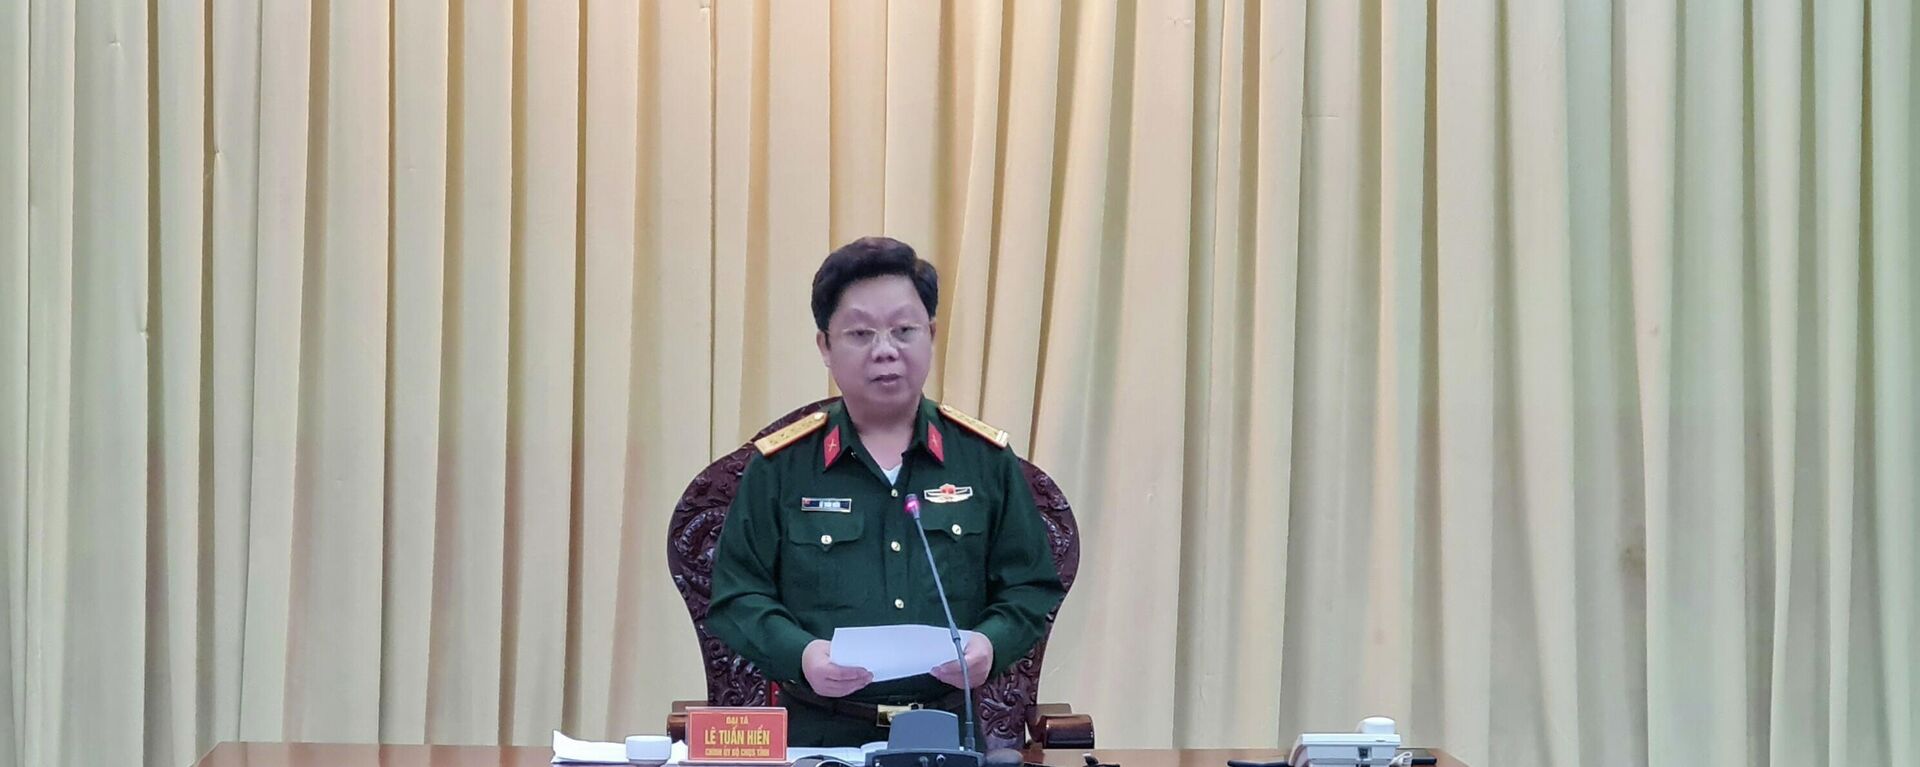 Đại tá Lê Tuấn Hiền, Chính ủy Bộ Chỉ huy quân sự tỉnh Gia Lai phát biểu tại buổi họp báo - Sputnik Việt Nam, 1920, 01.12.2021